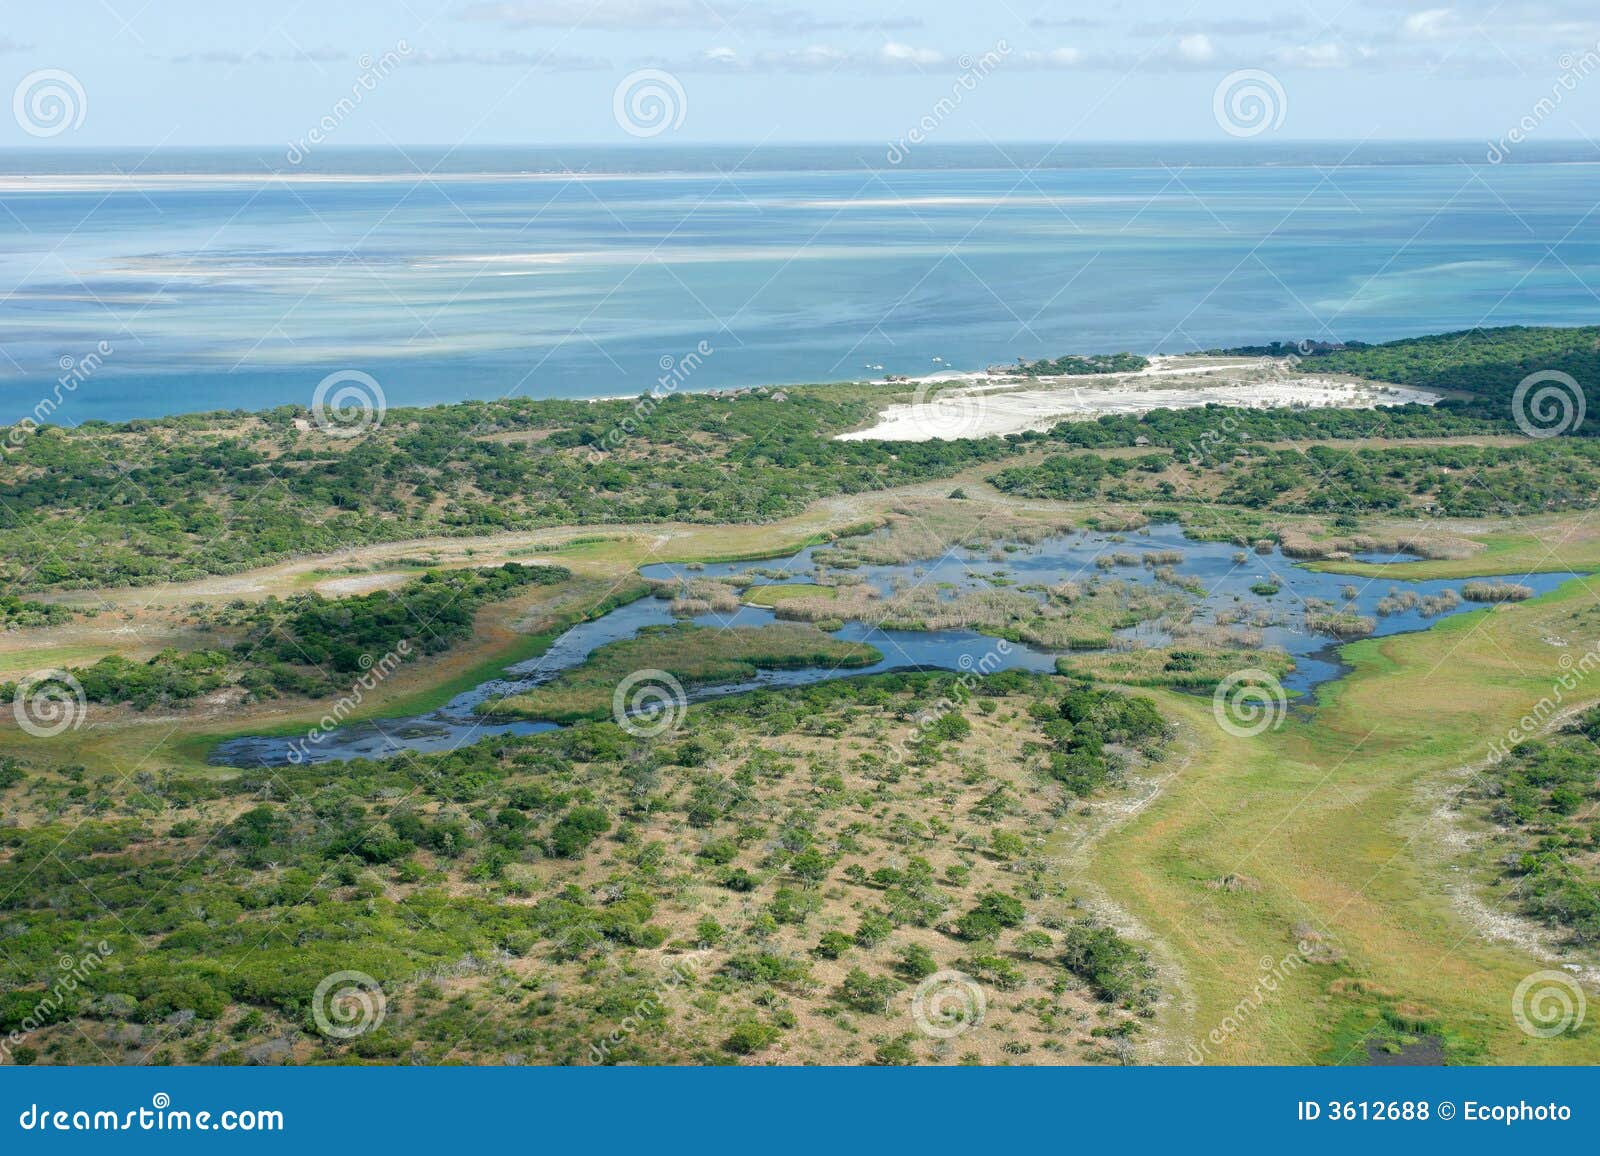 Lucht mening van ondiepe kustwateren en bossen van de tropische kust van Mozambique, Zuid-Afrika